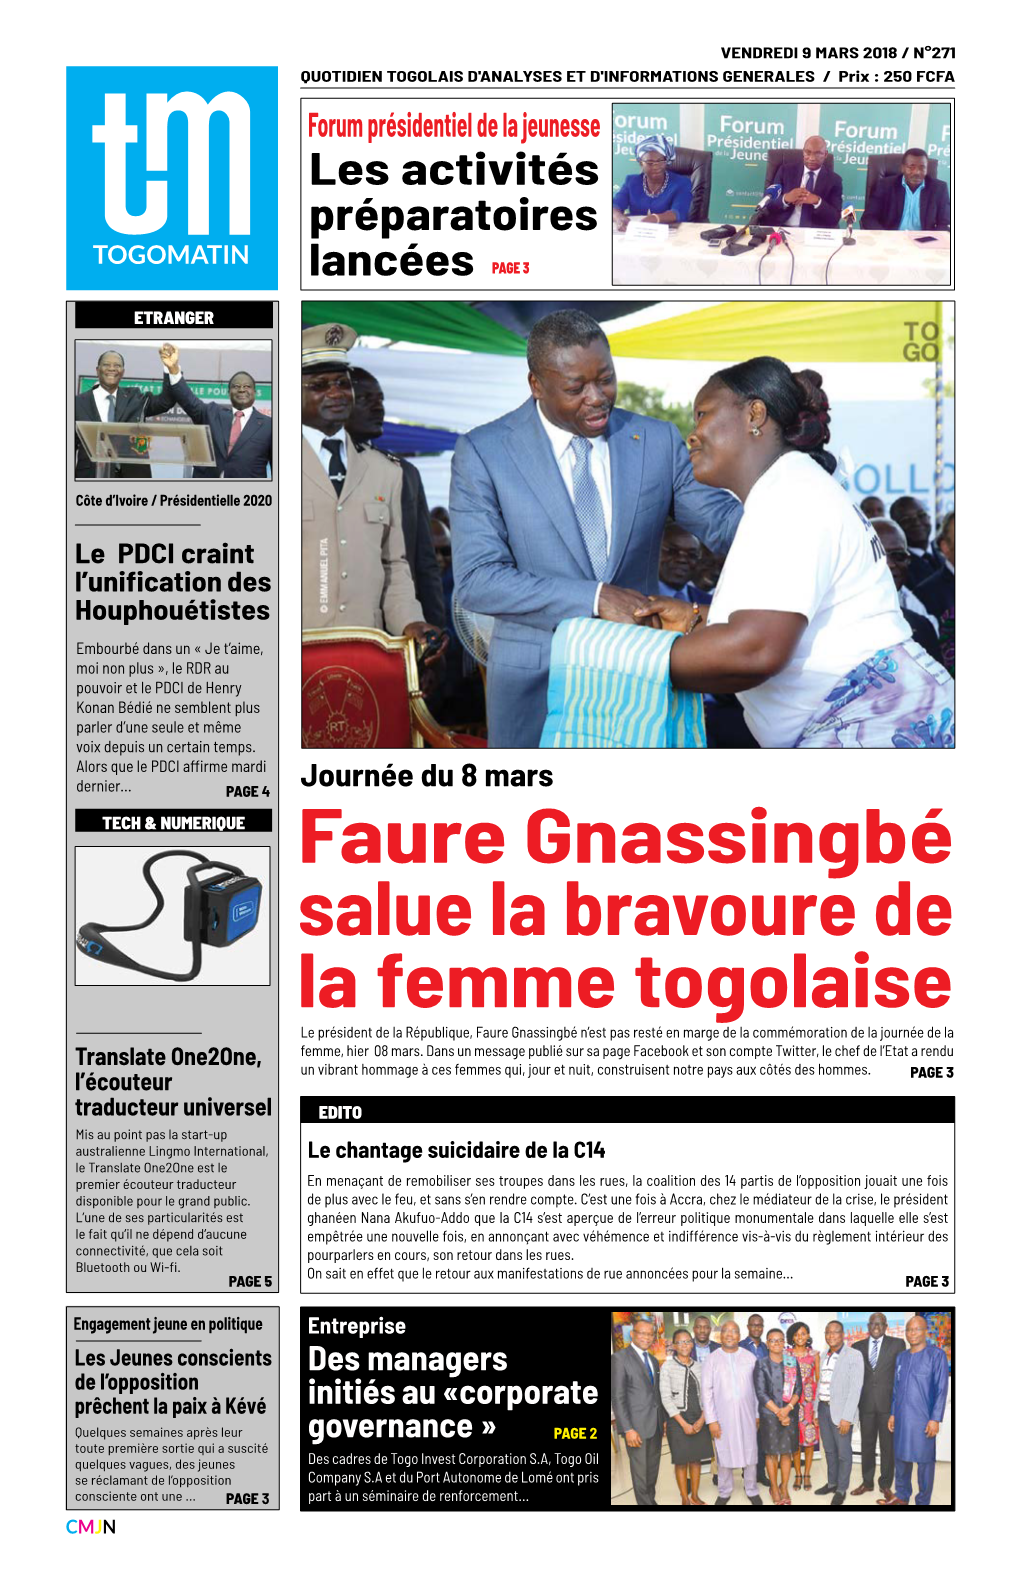 Faure Gnassingbé Salue La Bravoure De La Femme Togolaise